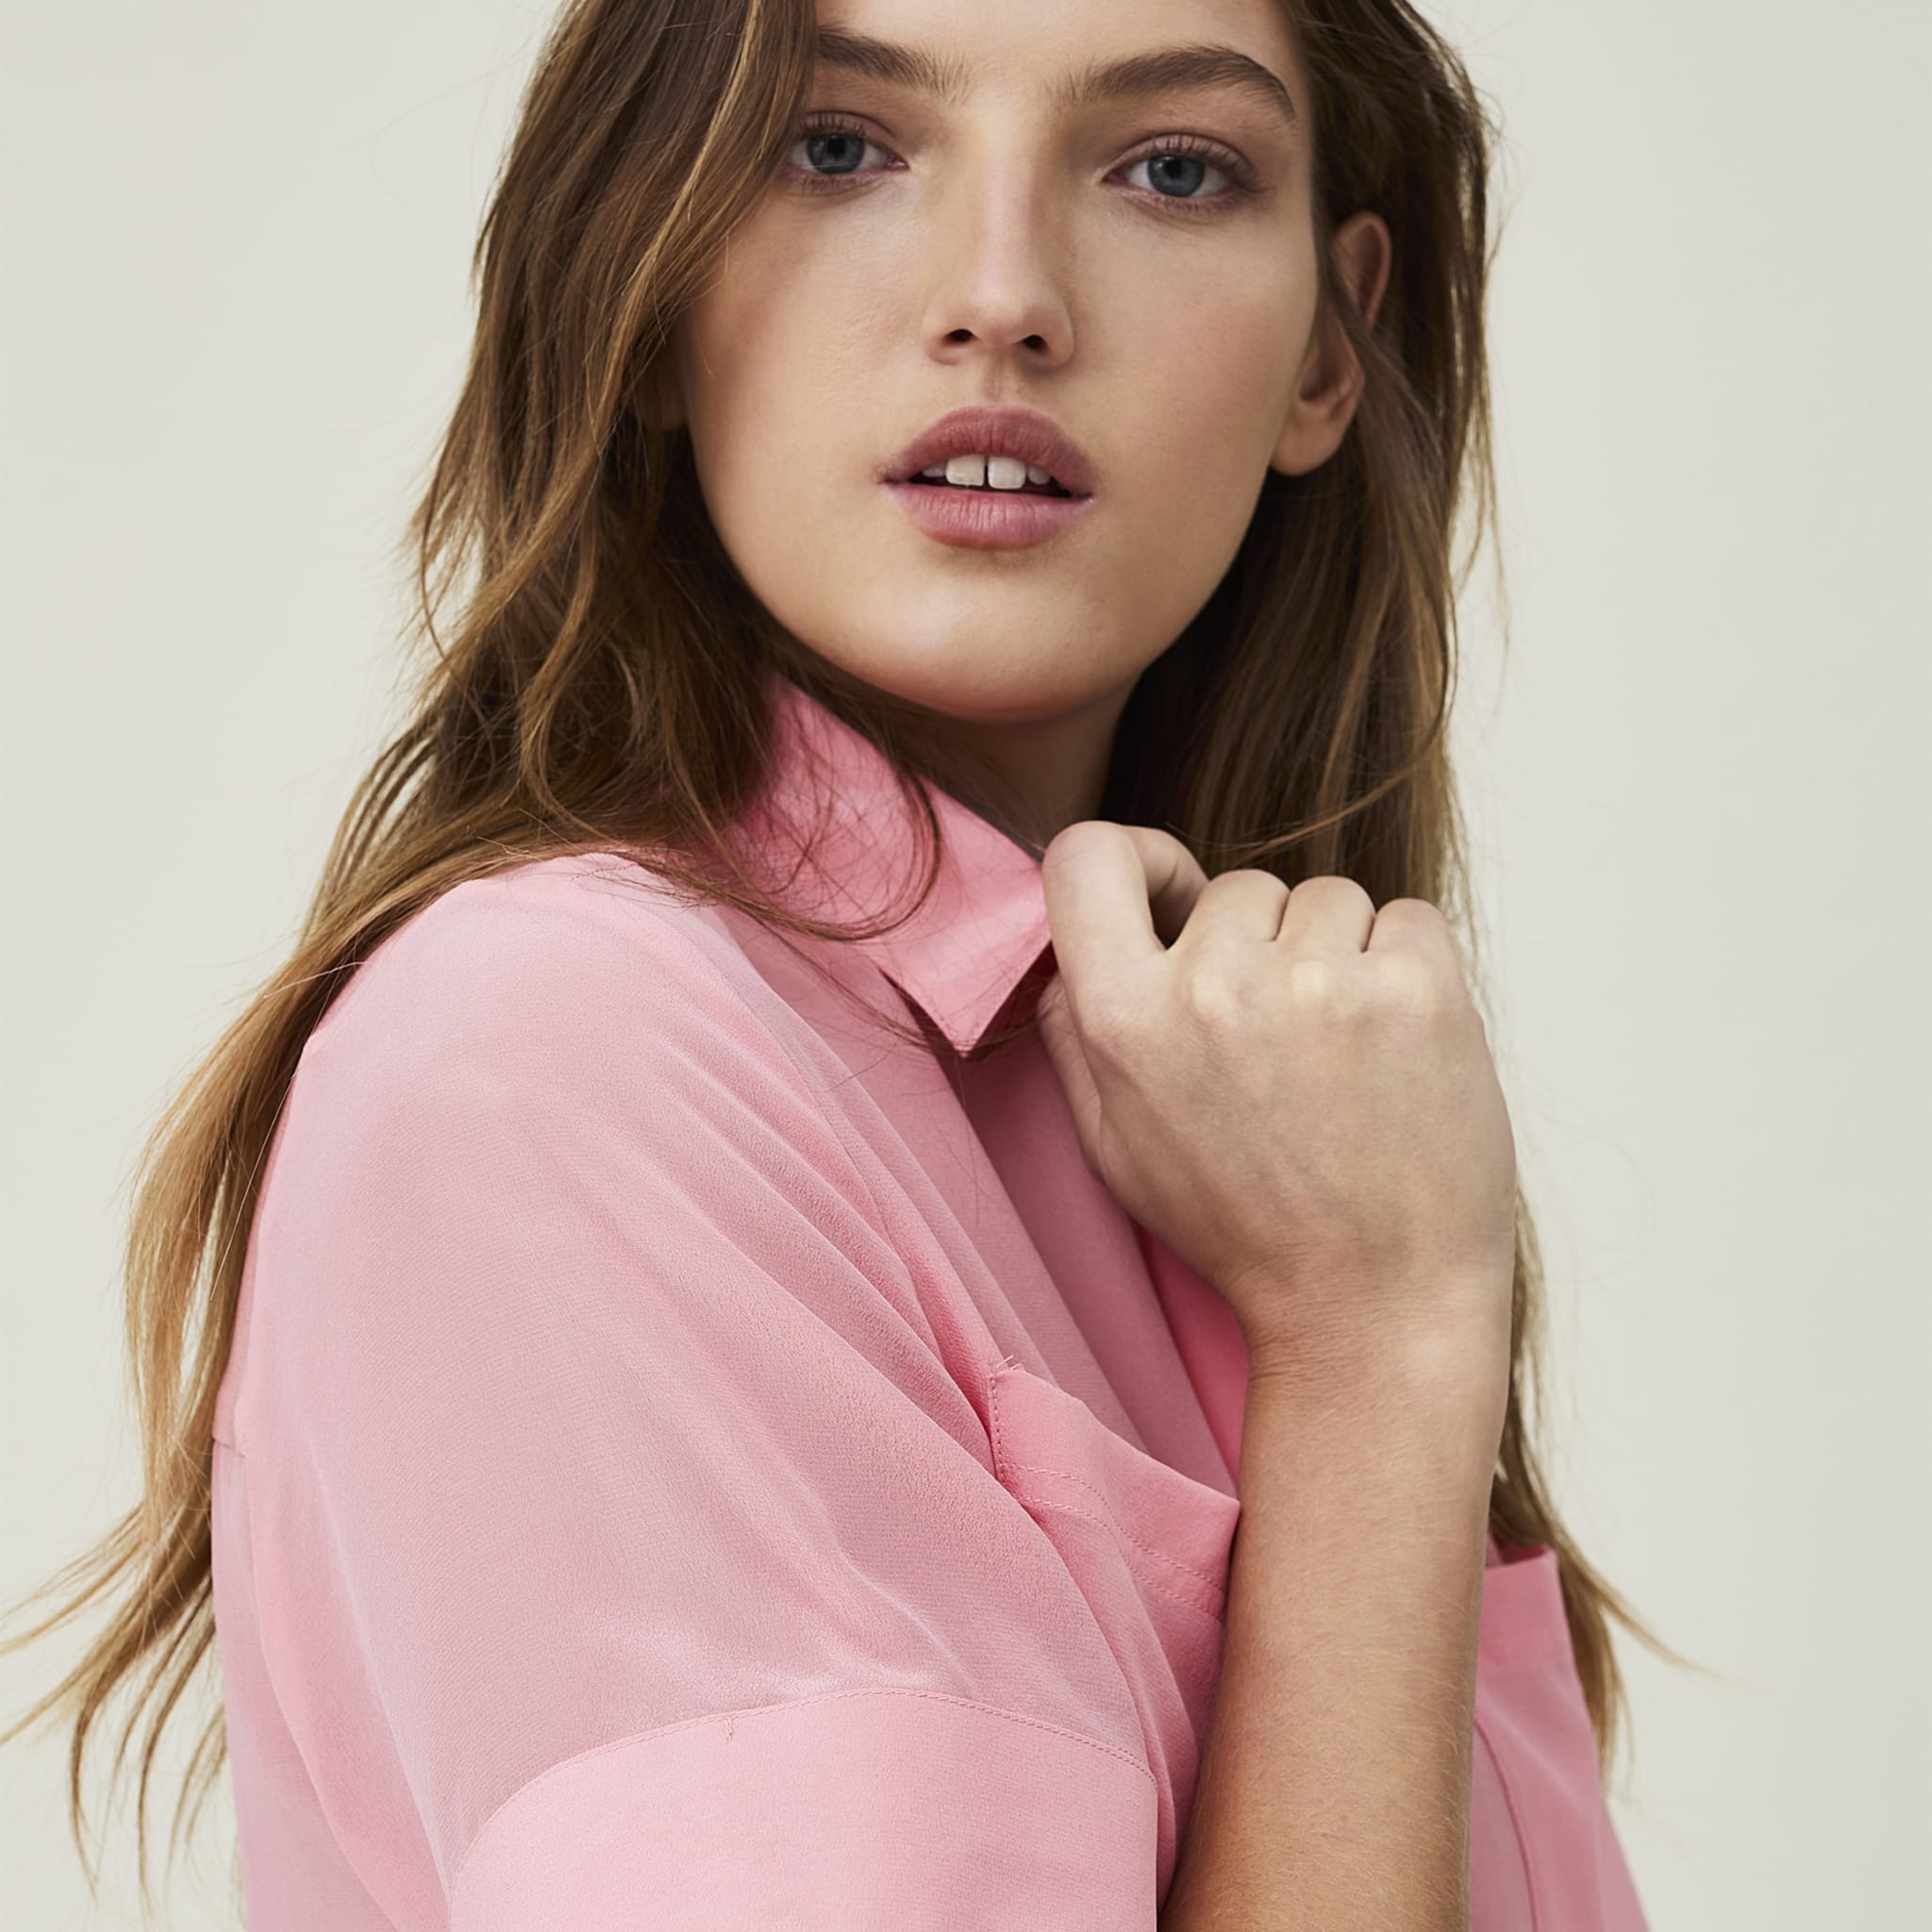 Reign Silk Short Sleeve Shirt, pink